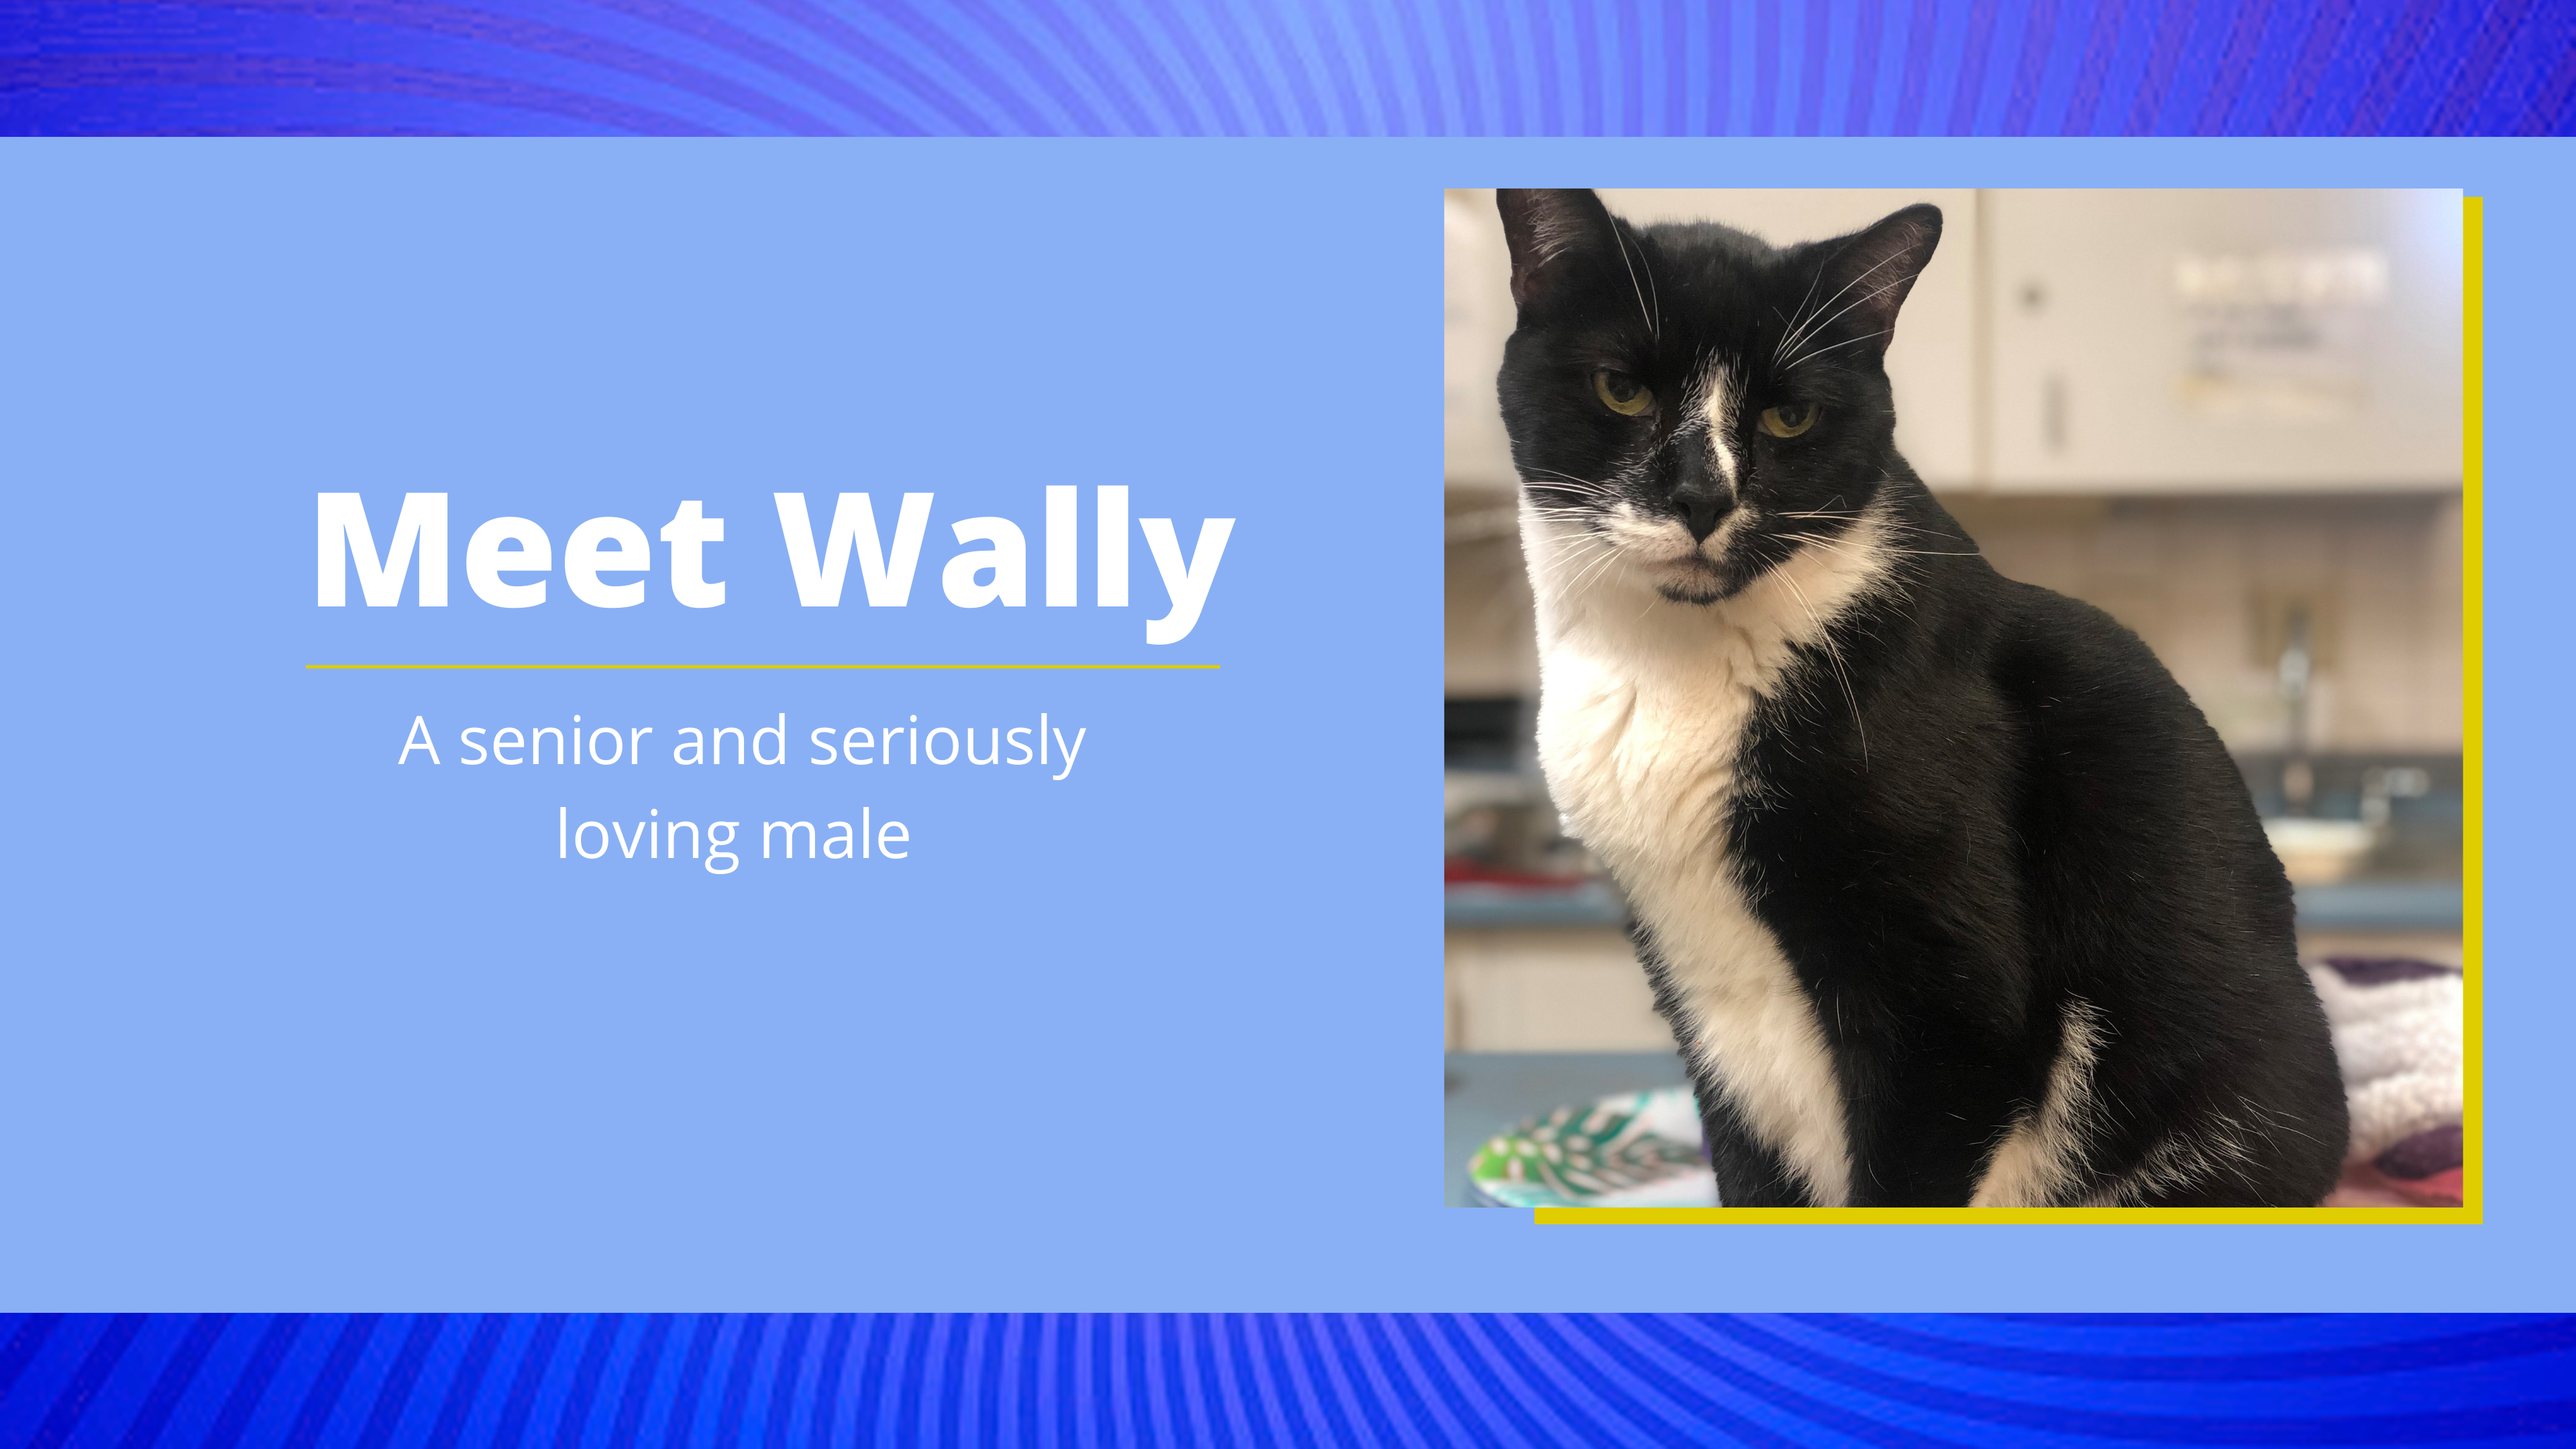 Meet Wally